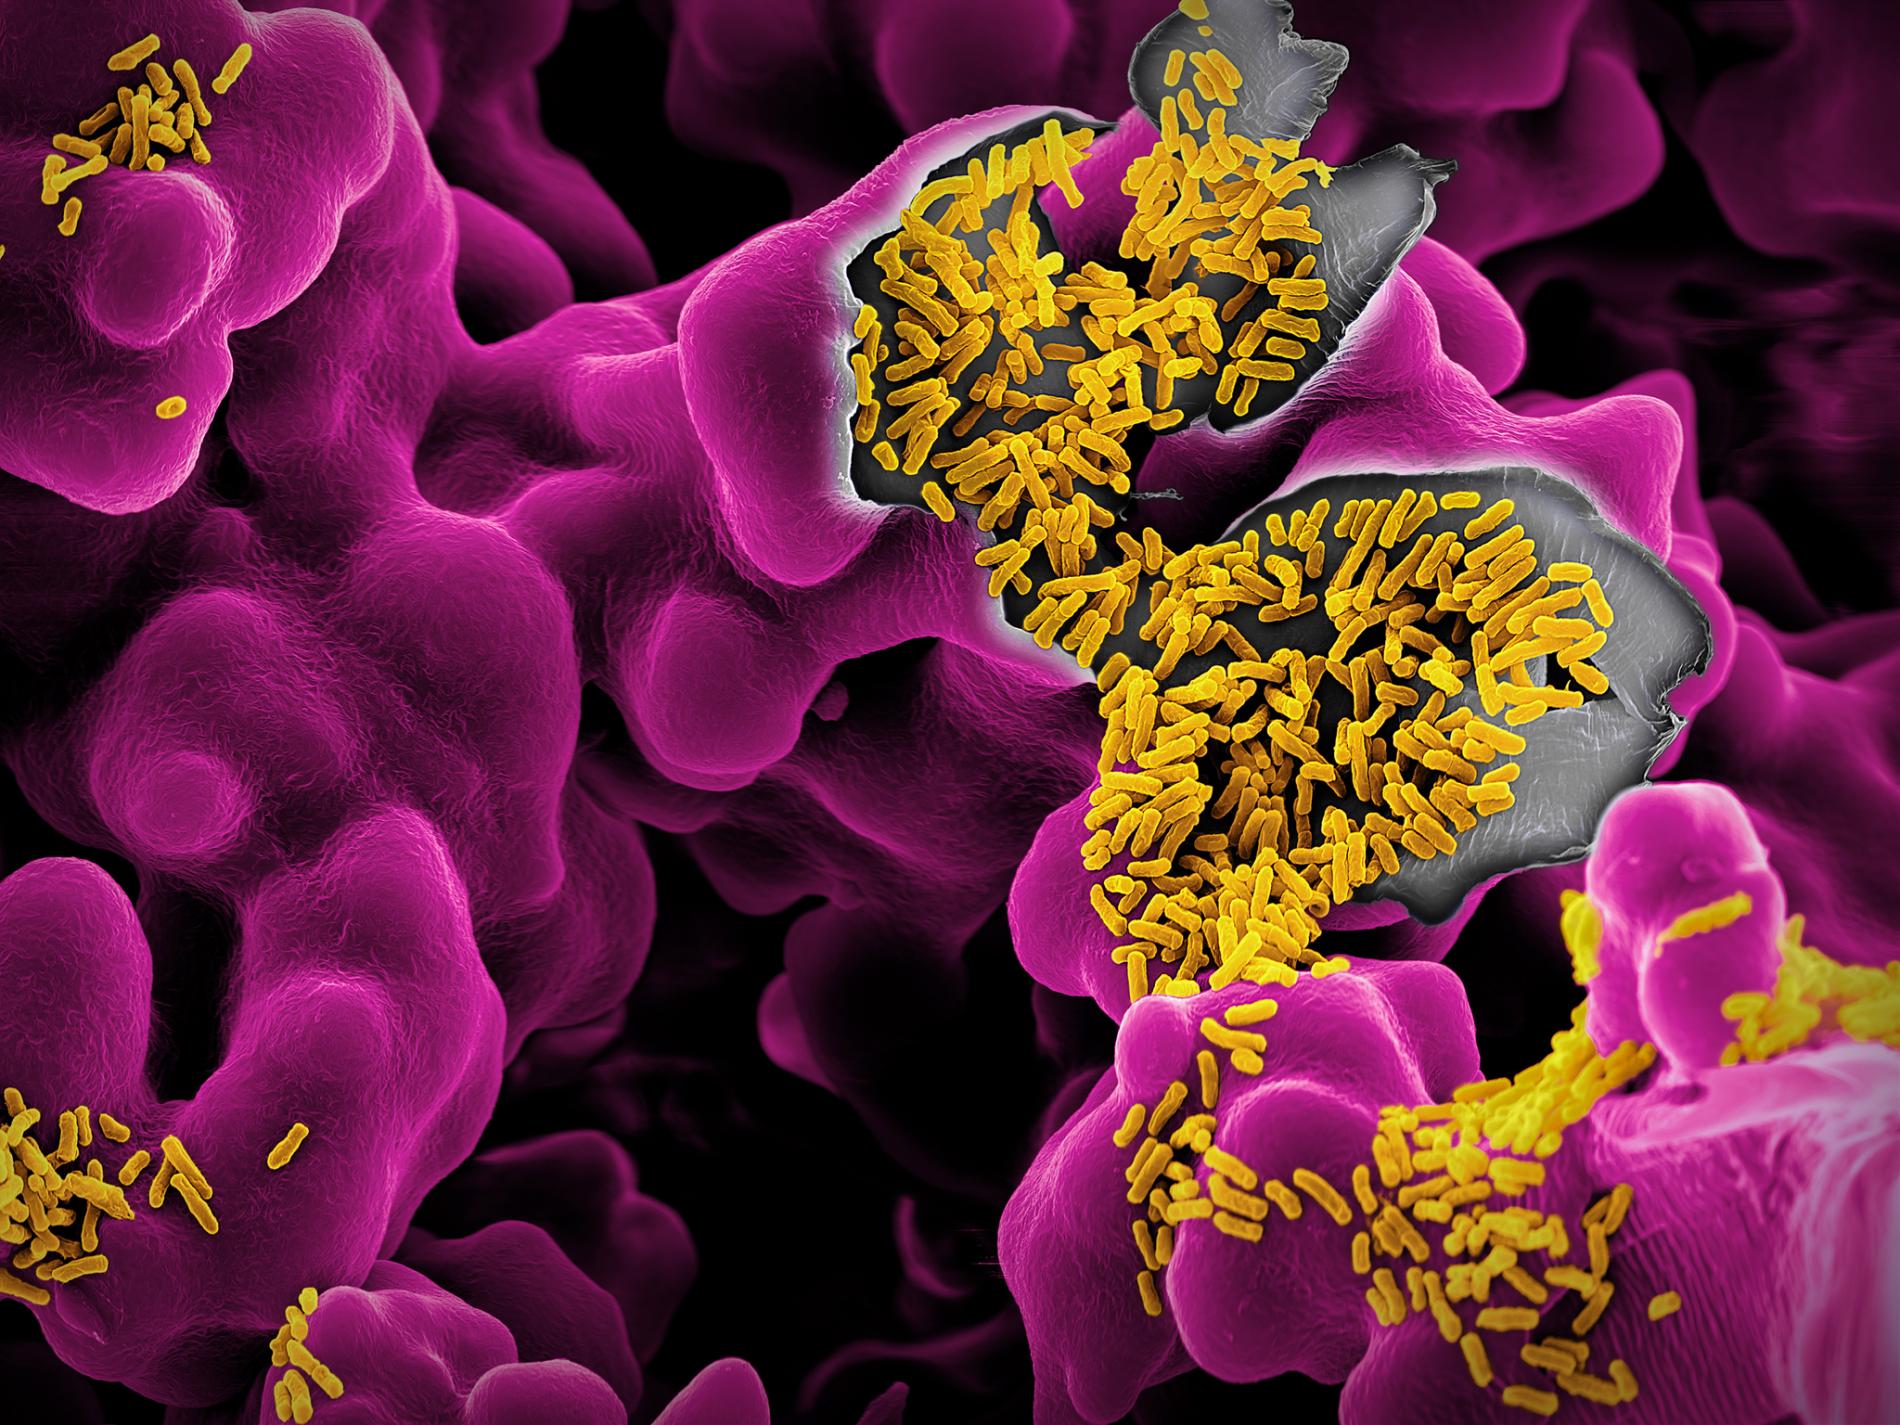 Αίμα μικρόβιο έντερο: Γενετική παραλλαγή στον ανθρώπινο μεταβολισμό